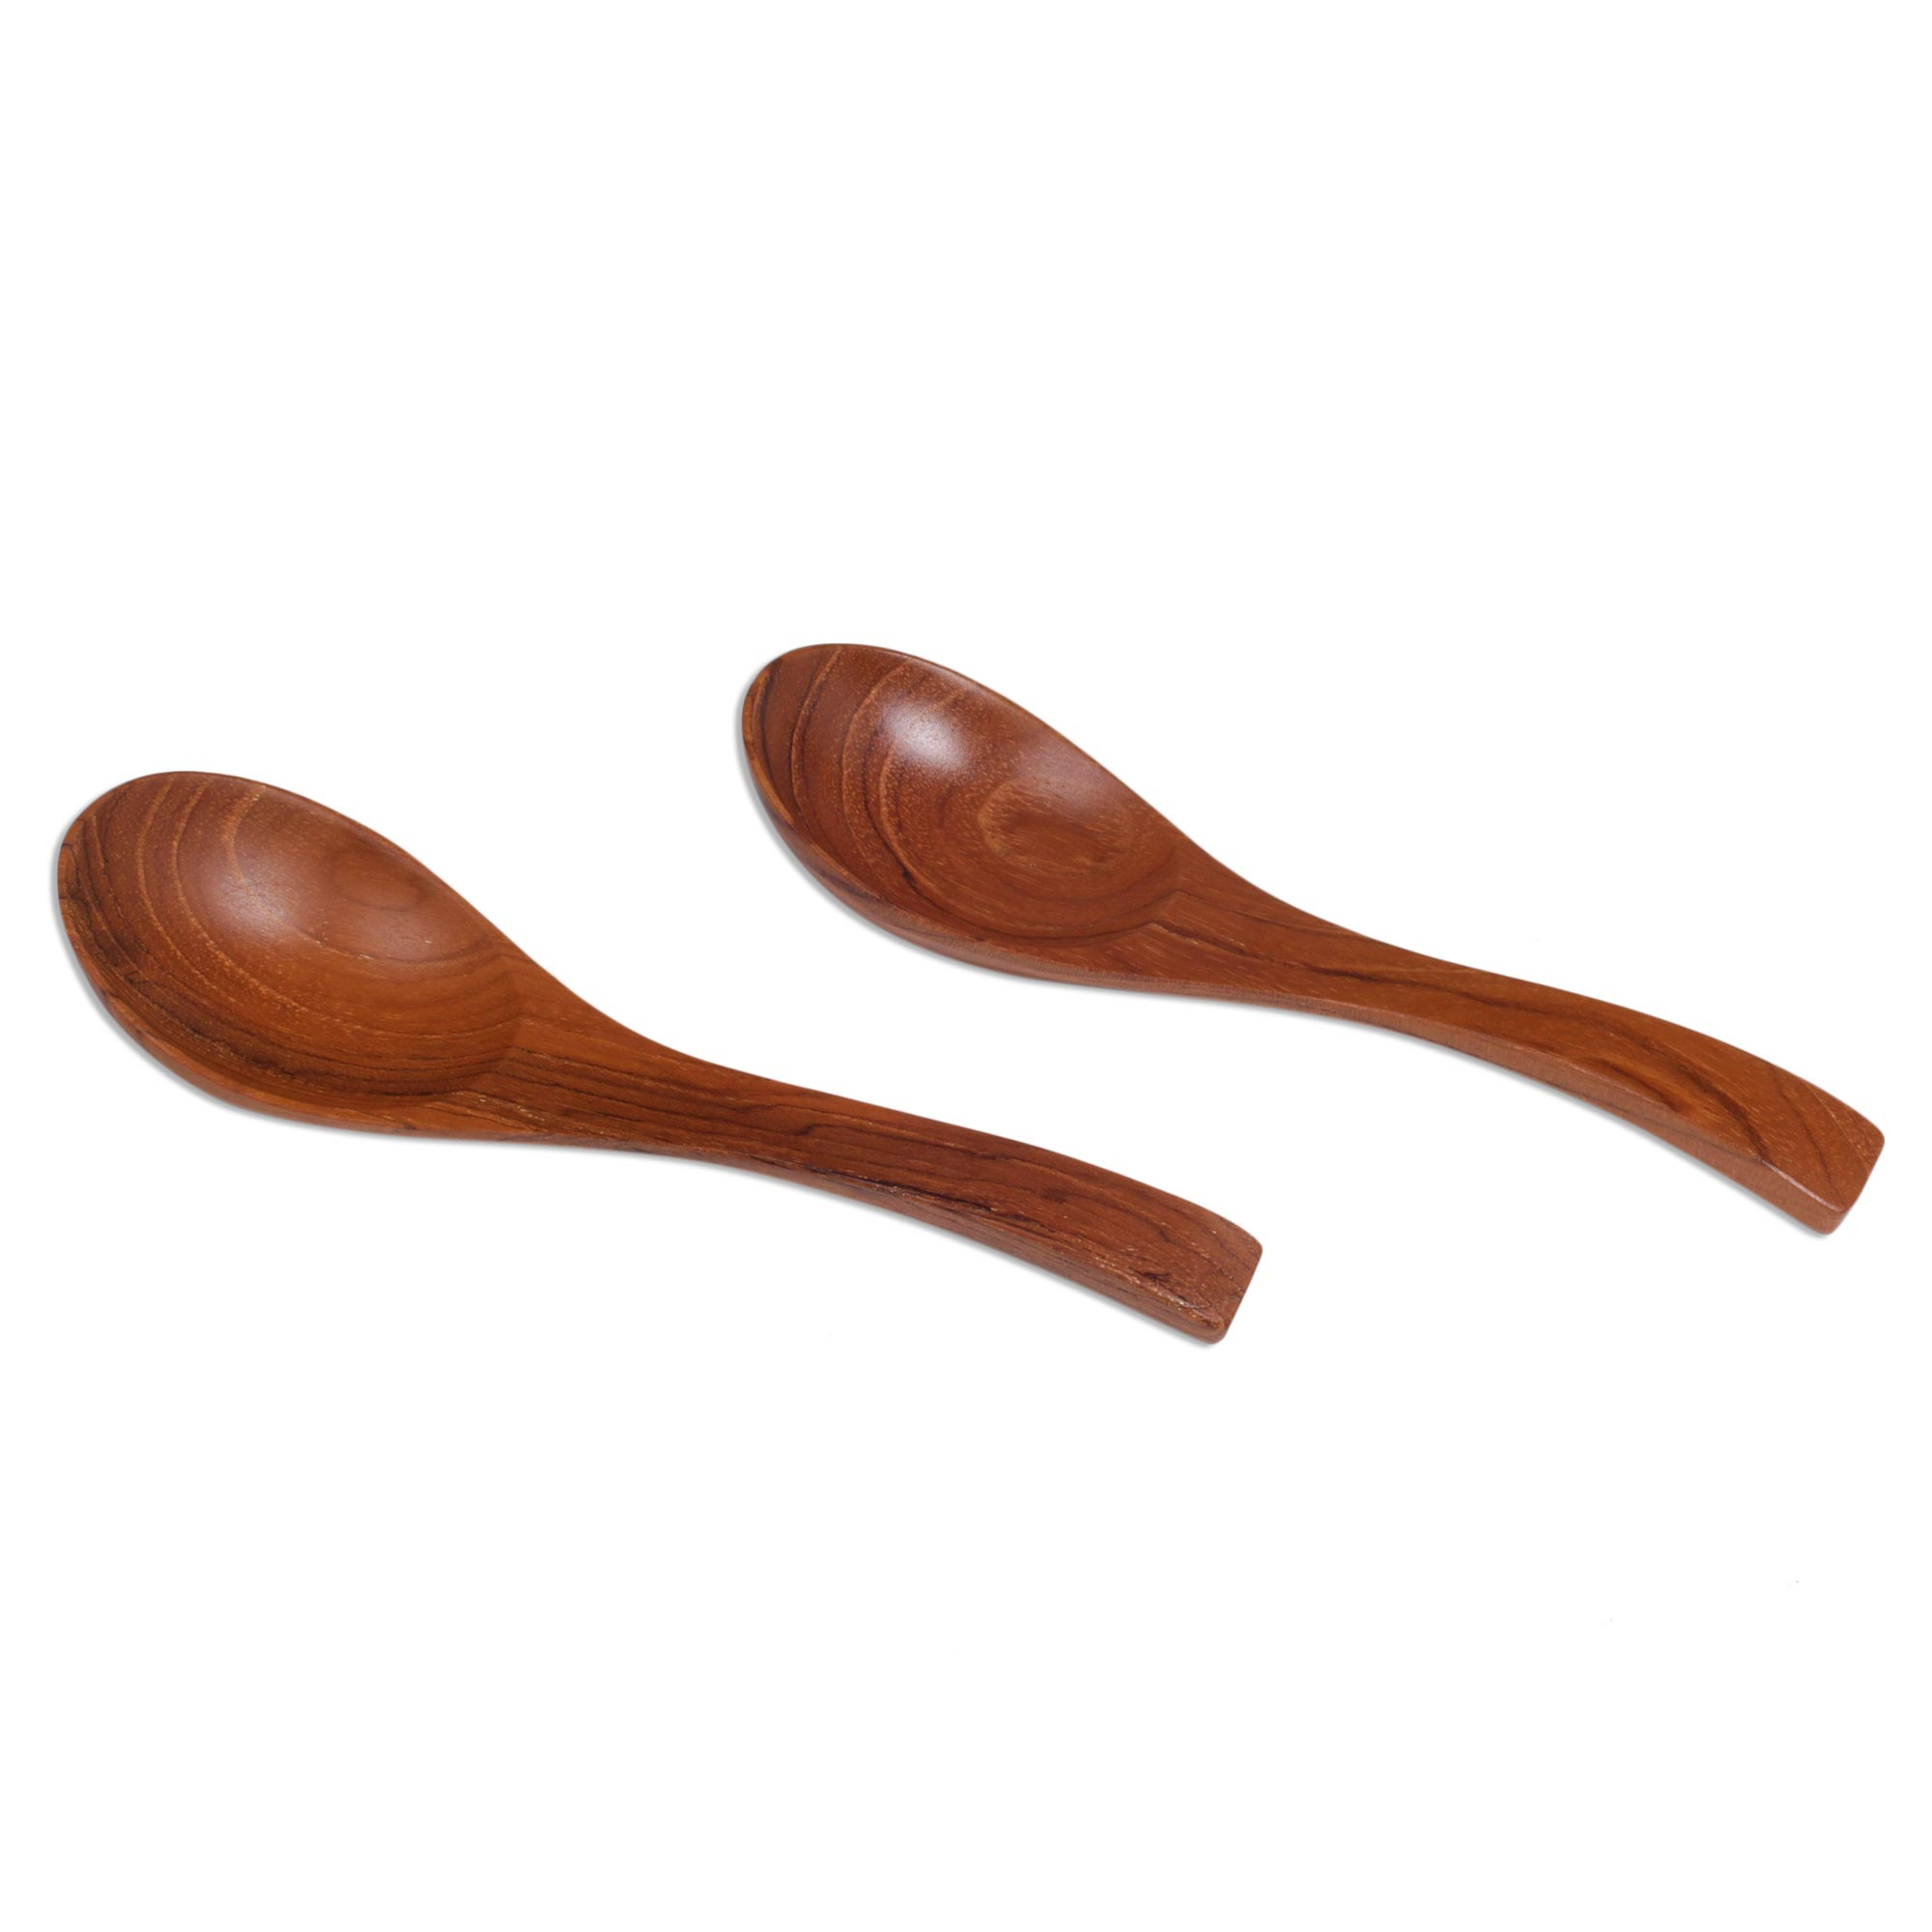 UNICEF Market | Handmade Teak Wood Spoons from Bali (Pair) - Elegant ...